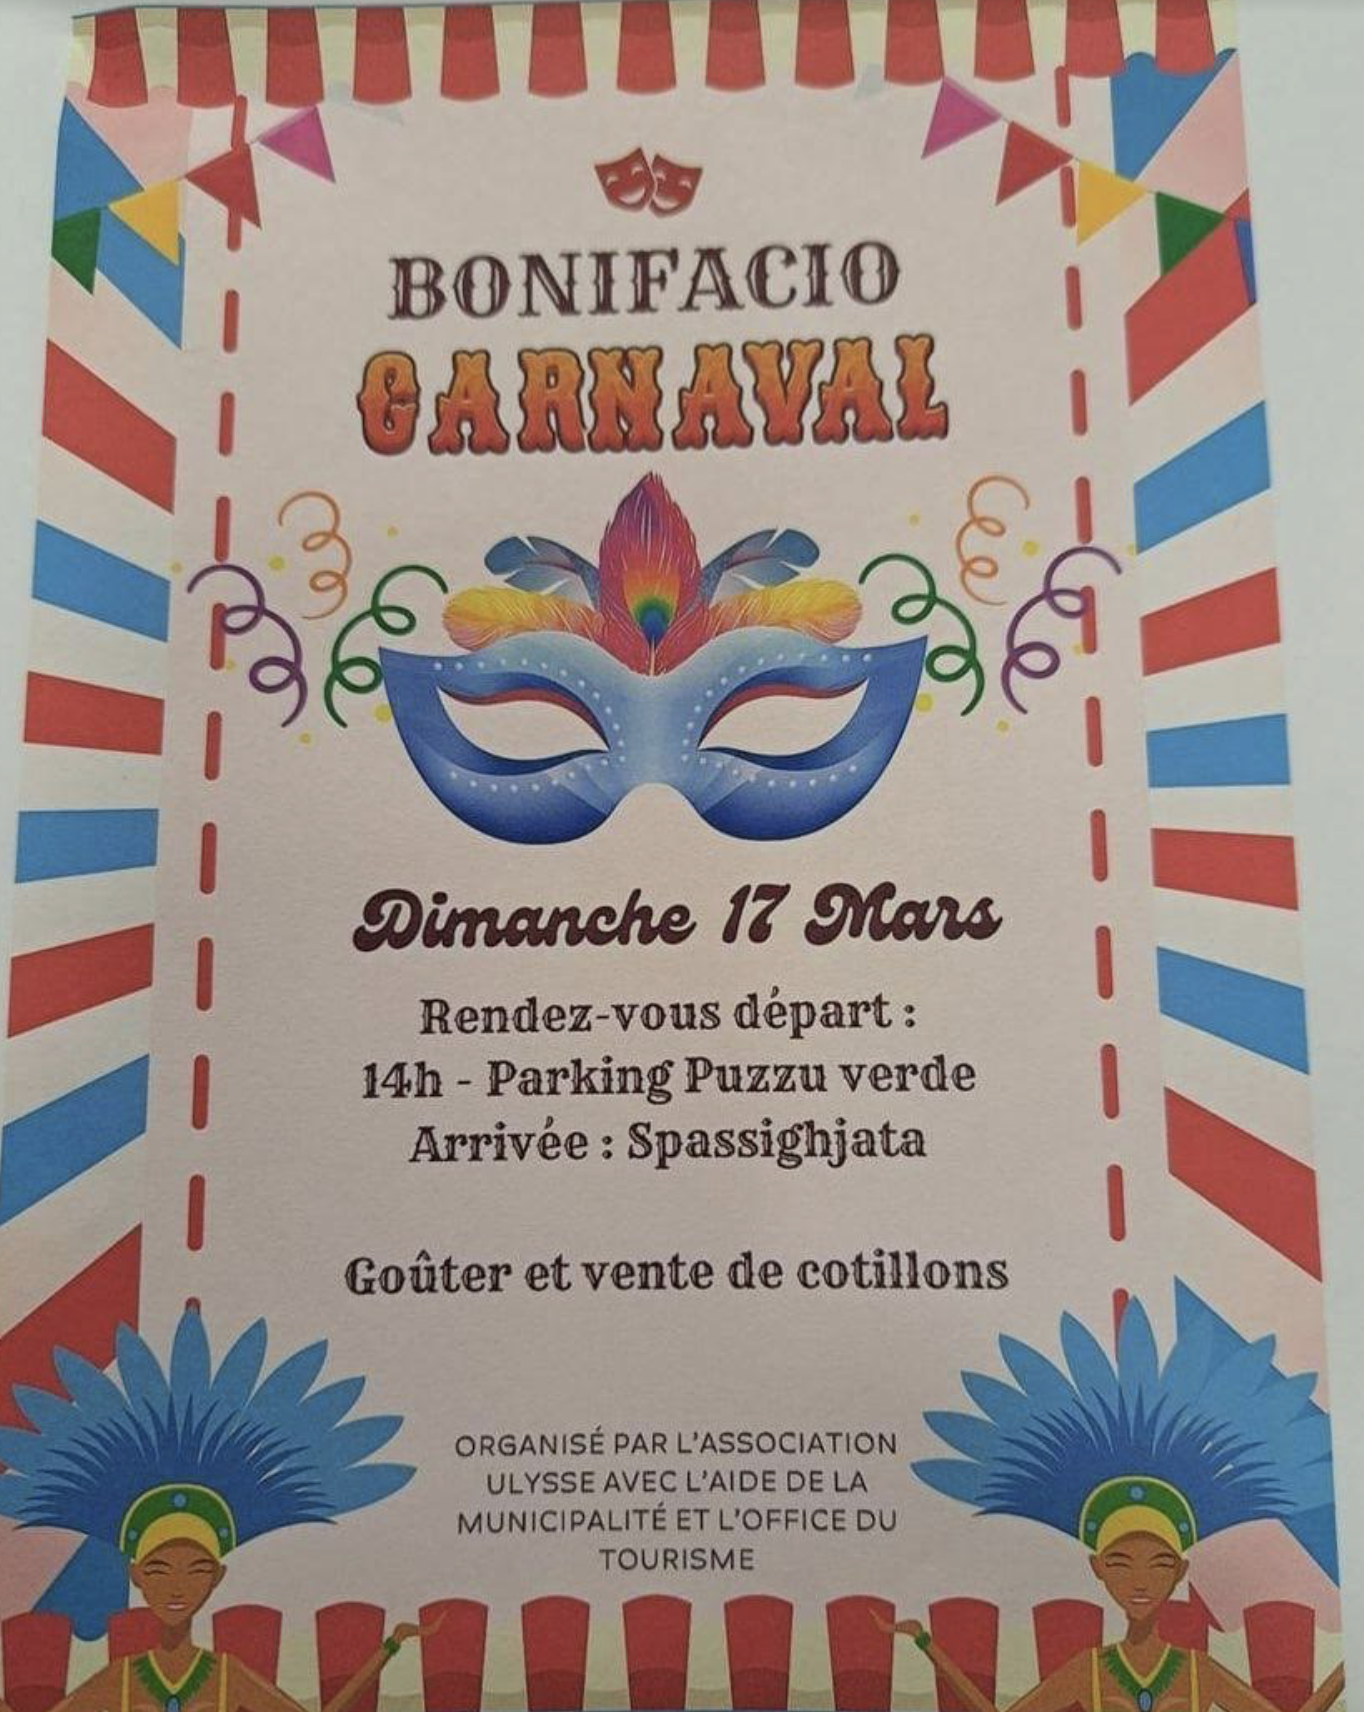 A Bonifacio, le carnaval c'est dimanche 17 mars